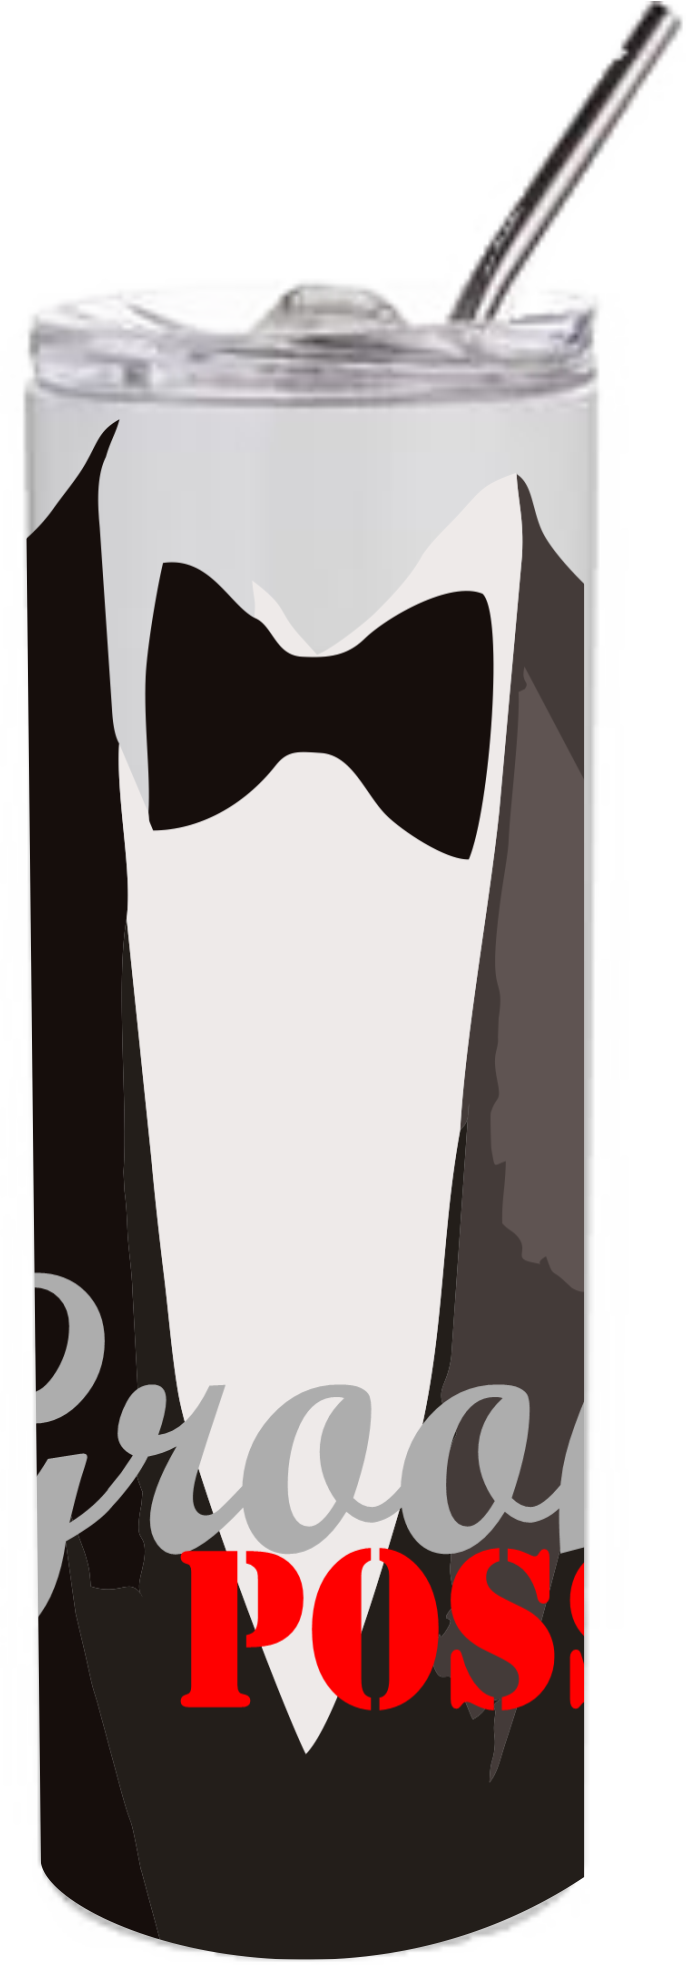 Groom Posse - Tuxedo